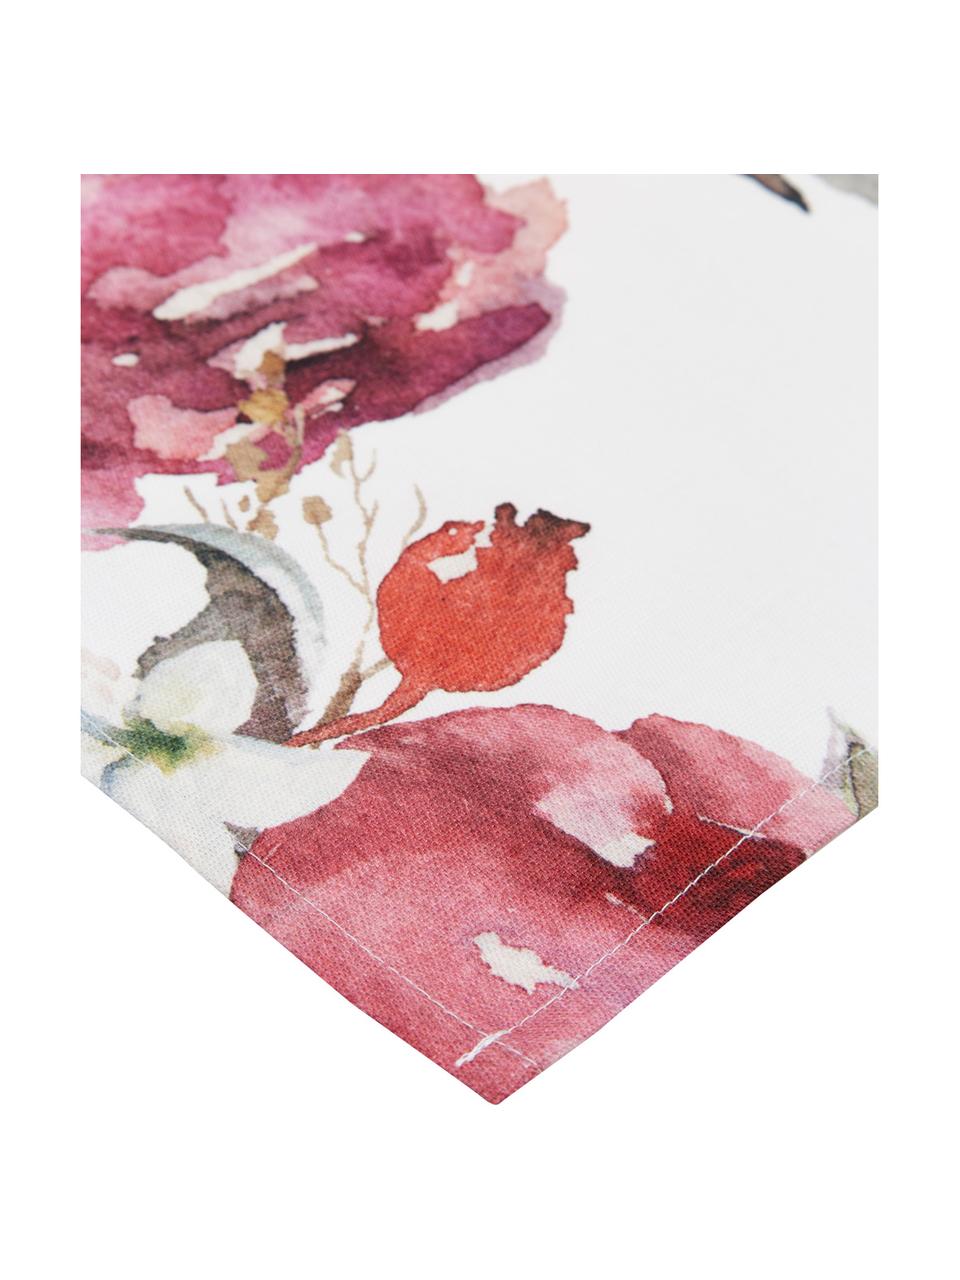 Baumwoll-Tischläufer Florisia mit Blumenmotiven, 100% Baumwolle, Rosa, Weiß, Lila, Grün, B 50 x L 160 cm